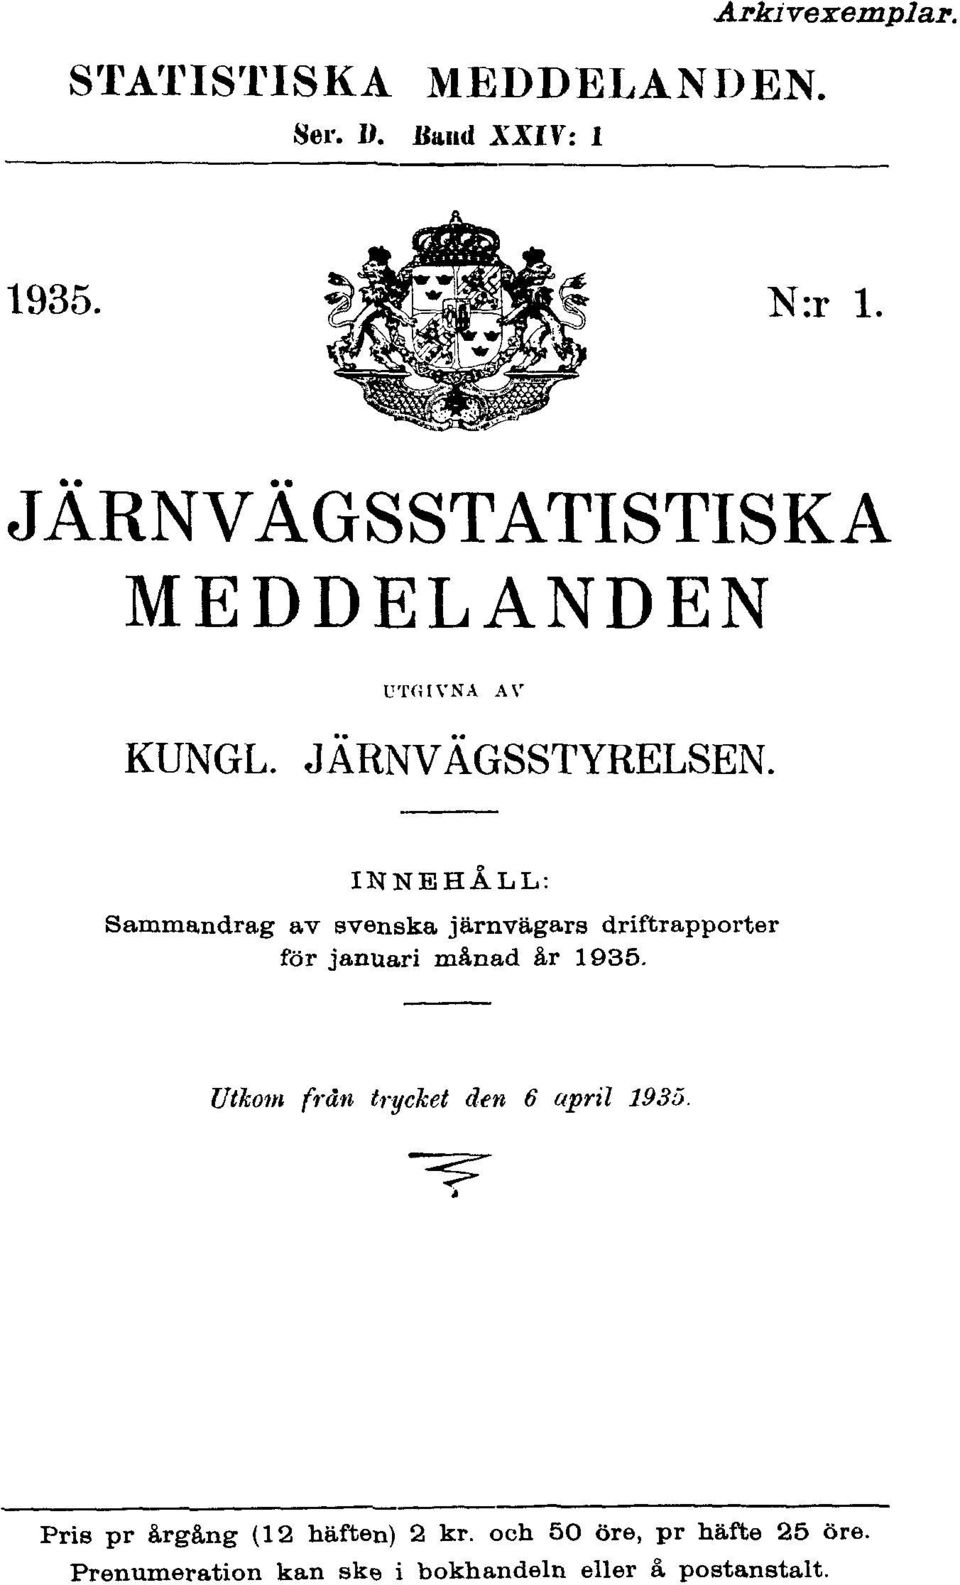 INNEHÅLL: Sammandrag av svenska järnvägars driftrapporter för januari månad år 1935.